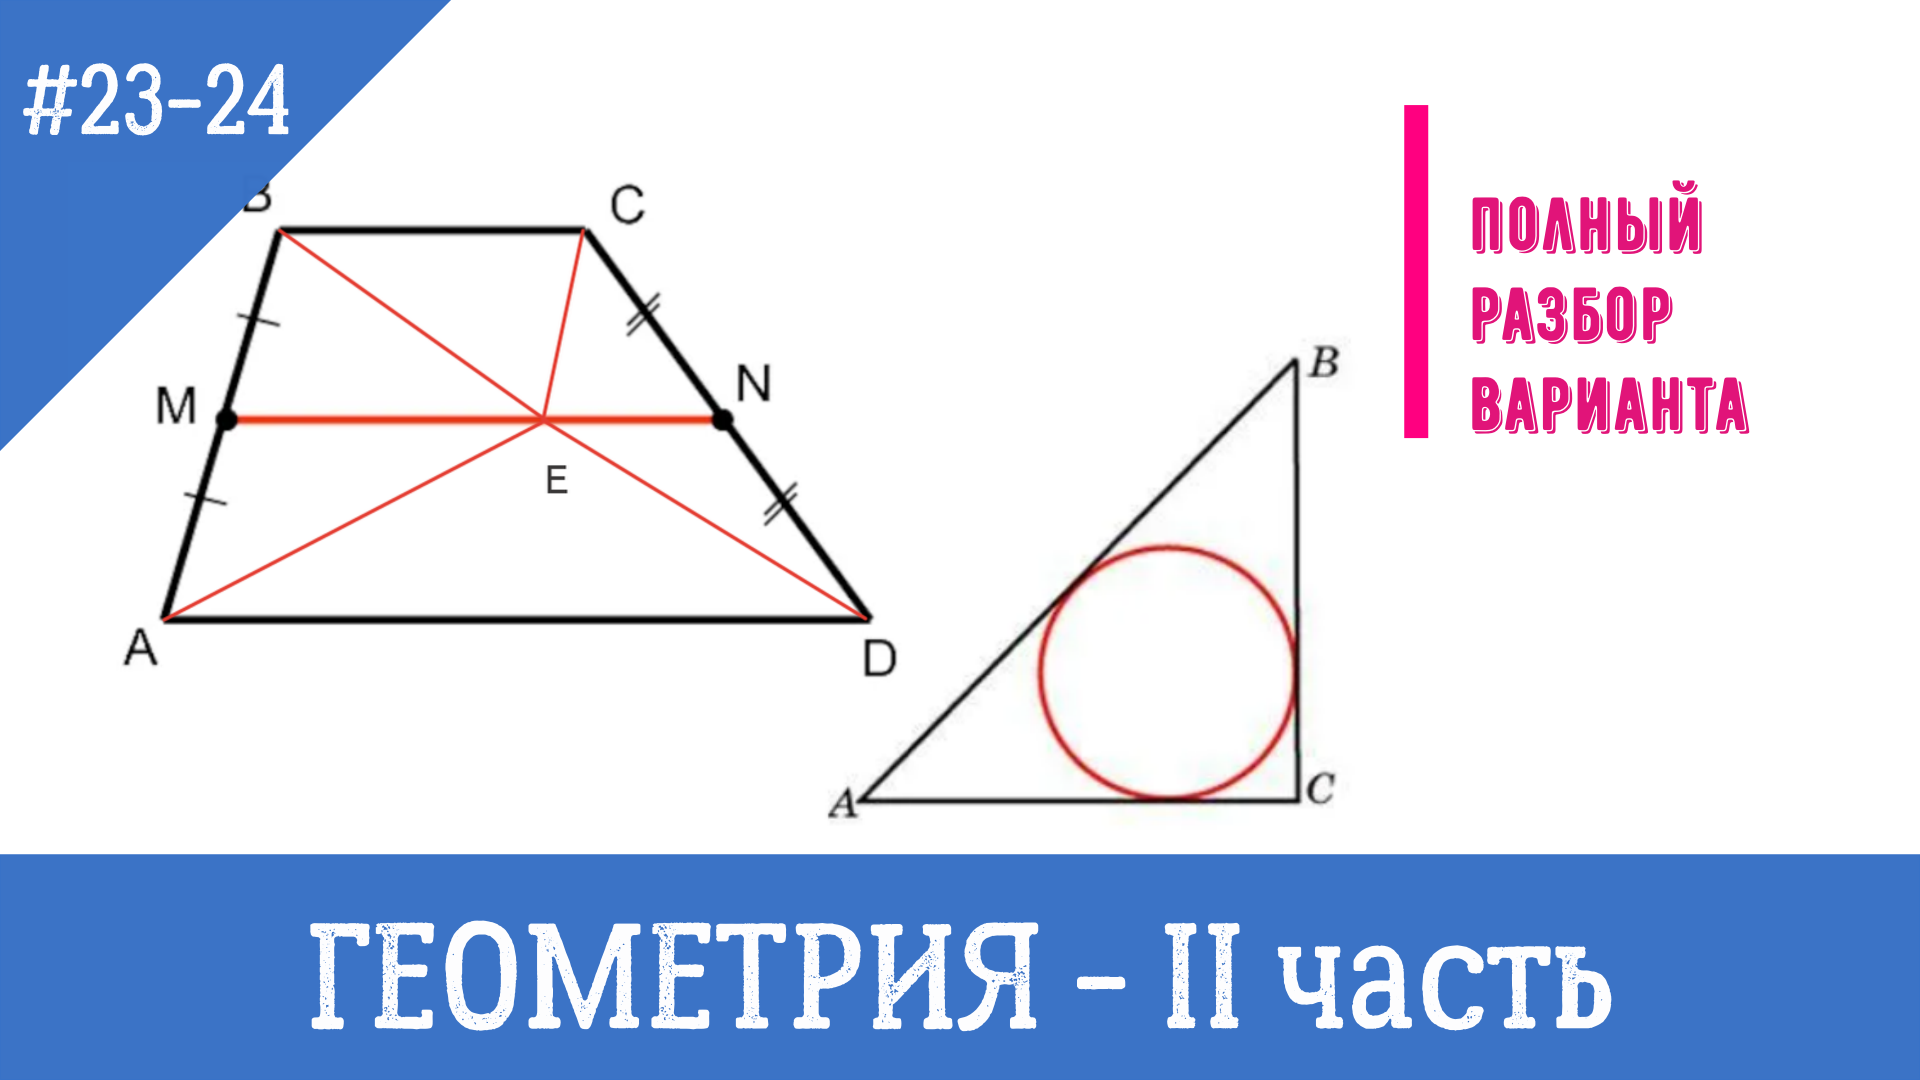 Геометрия огэ 15 19 задание. Задачи по геометрии из ОГЭ. Геометрия ОГЭ 23 задание. ОГЭ математика решение задач блок геометрия. Критерии оценки решения геометрических задач на ОГЭ.